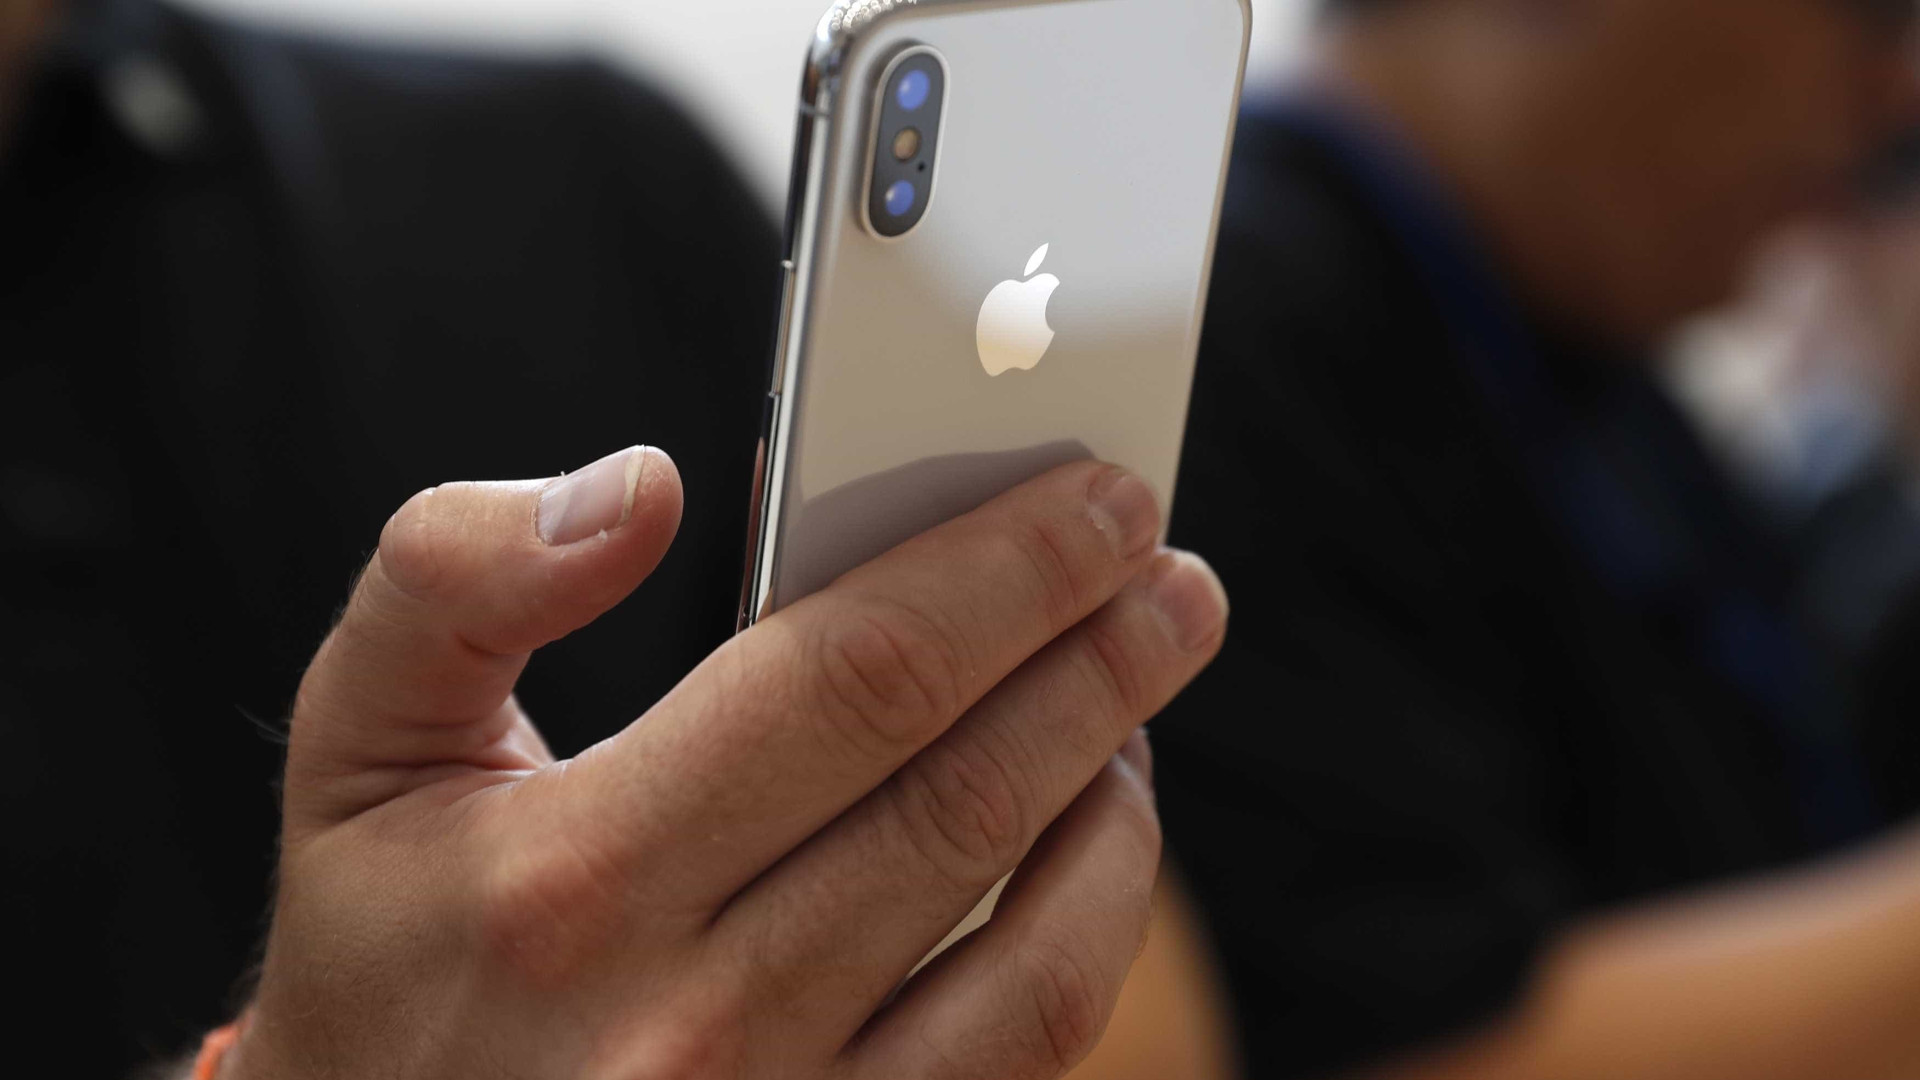 Apple vira alvo de investigação na França por encurtar vida de iPhones